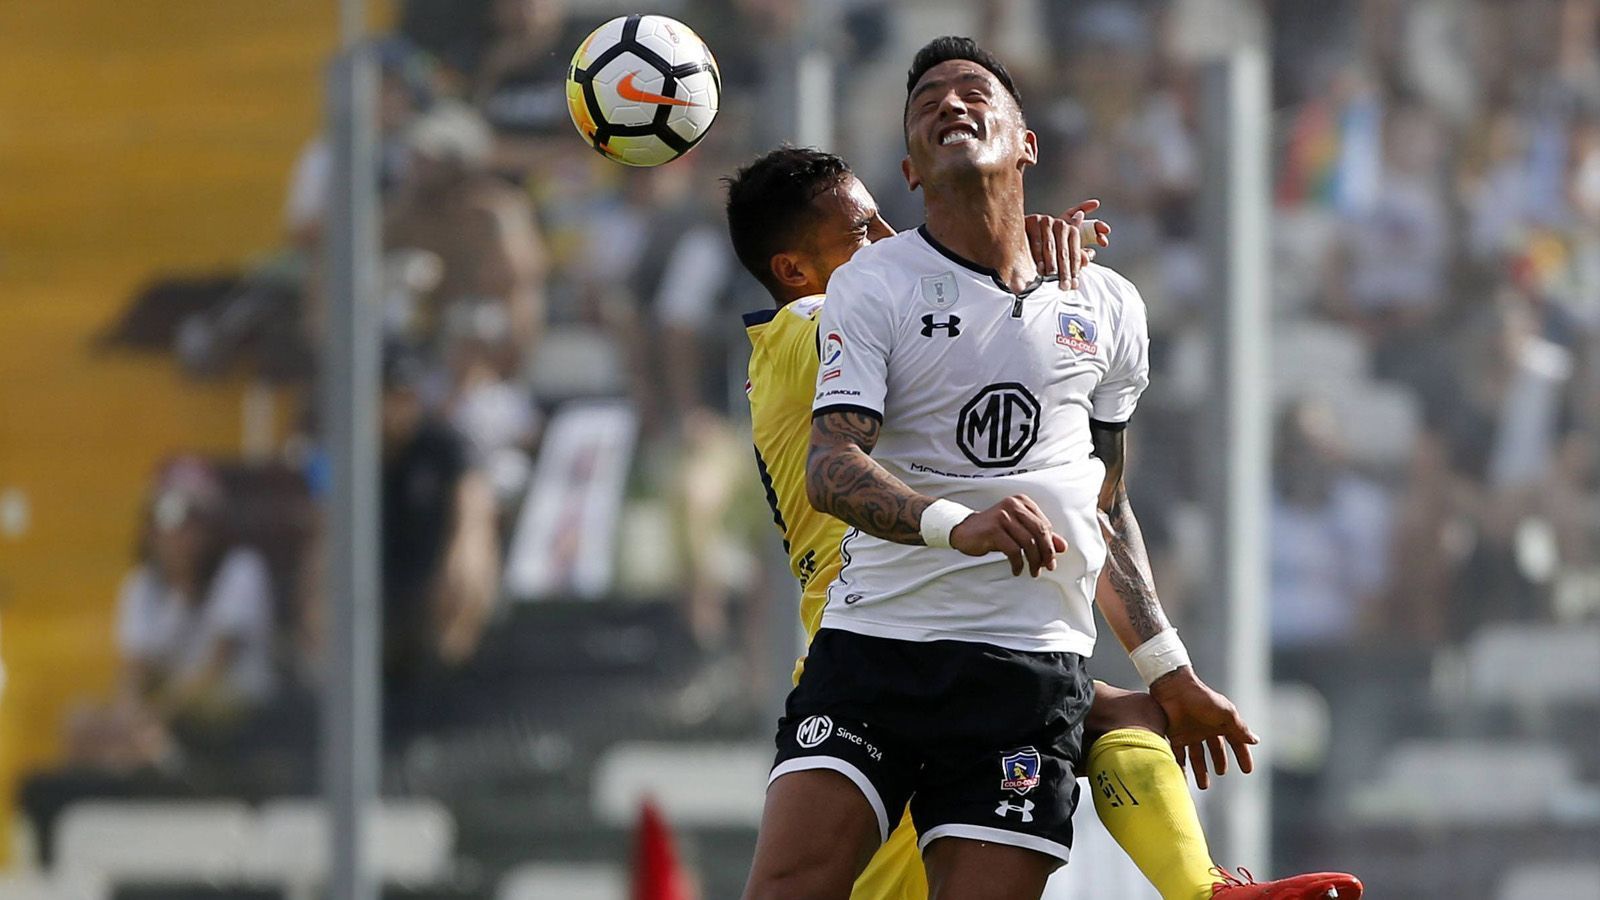 
                <strong>Lucas Barrios</strong><br>
                Der Paraguayaner wurde nach den drei Jahren in Dortmund zum Wandervogel und spielte vor allem bei südamerikanischen Klubs. Mit Ausnahme der BVB-Zeit konnte er in Europa nicht Fuß fassen. Momentan spielt der 35-Jährige für den argentinischen Erstligisten Gimnasia.
              